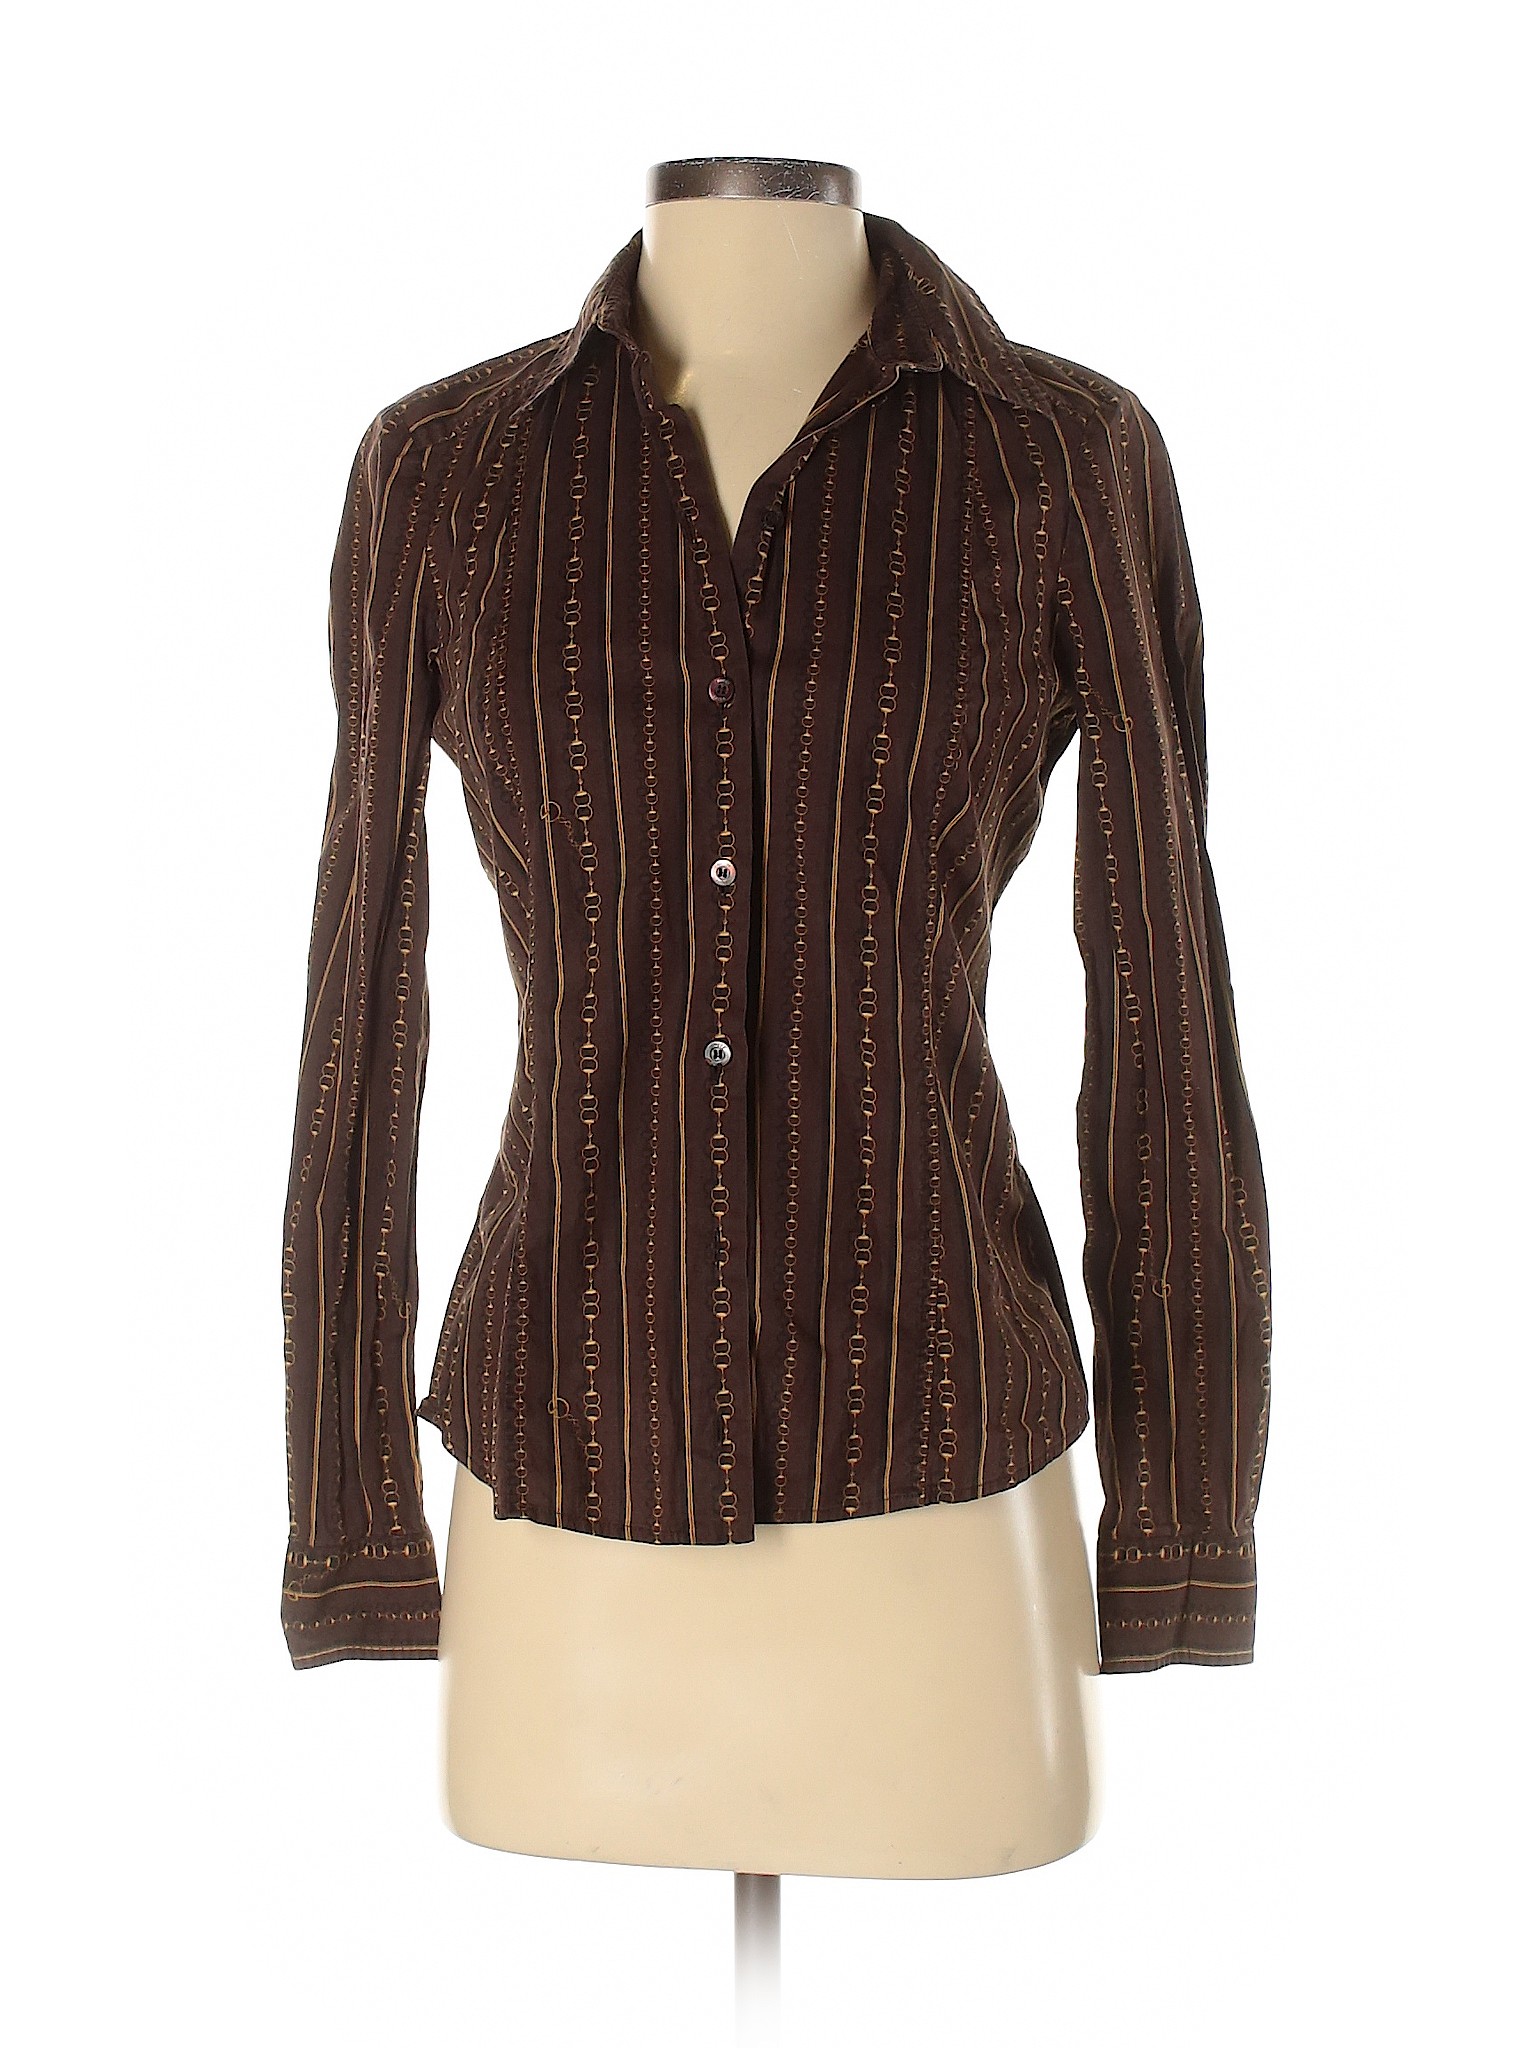 Gucci Women Brown Long Sleeve Button-Down Shirt 40 italian | eBay